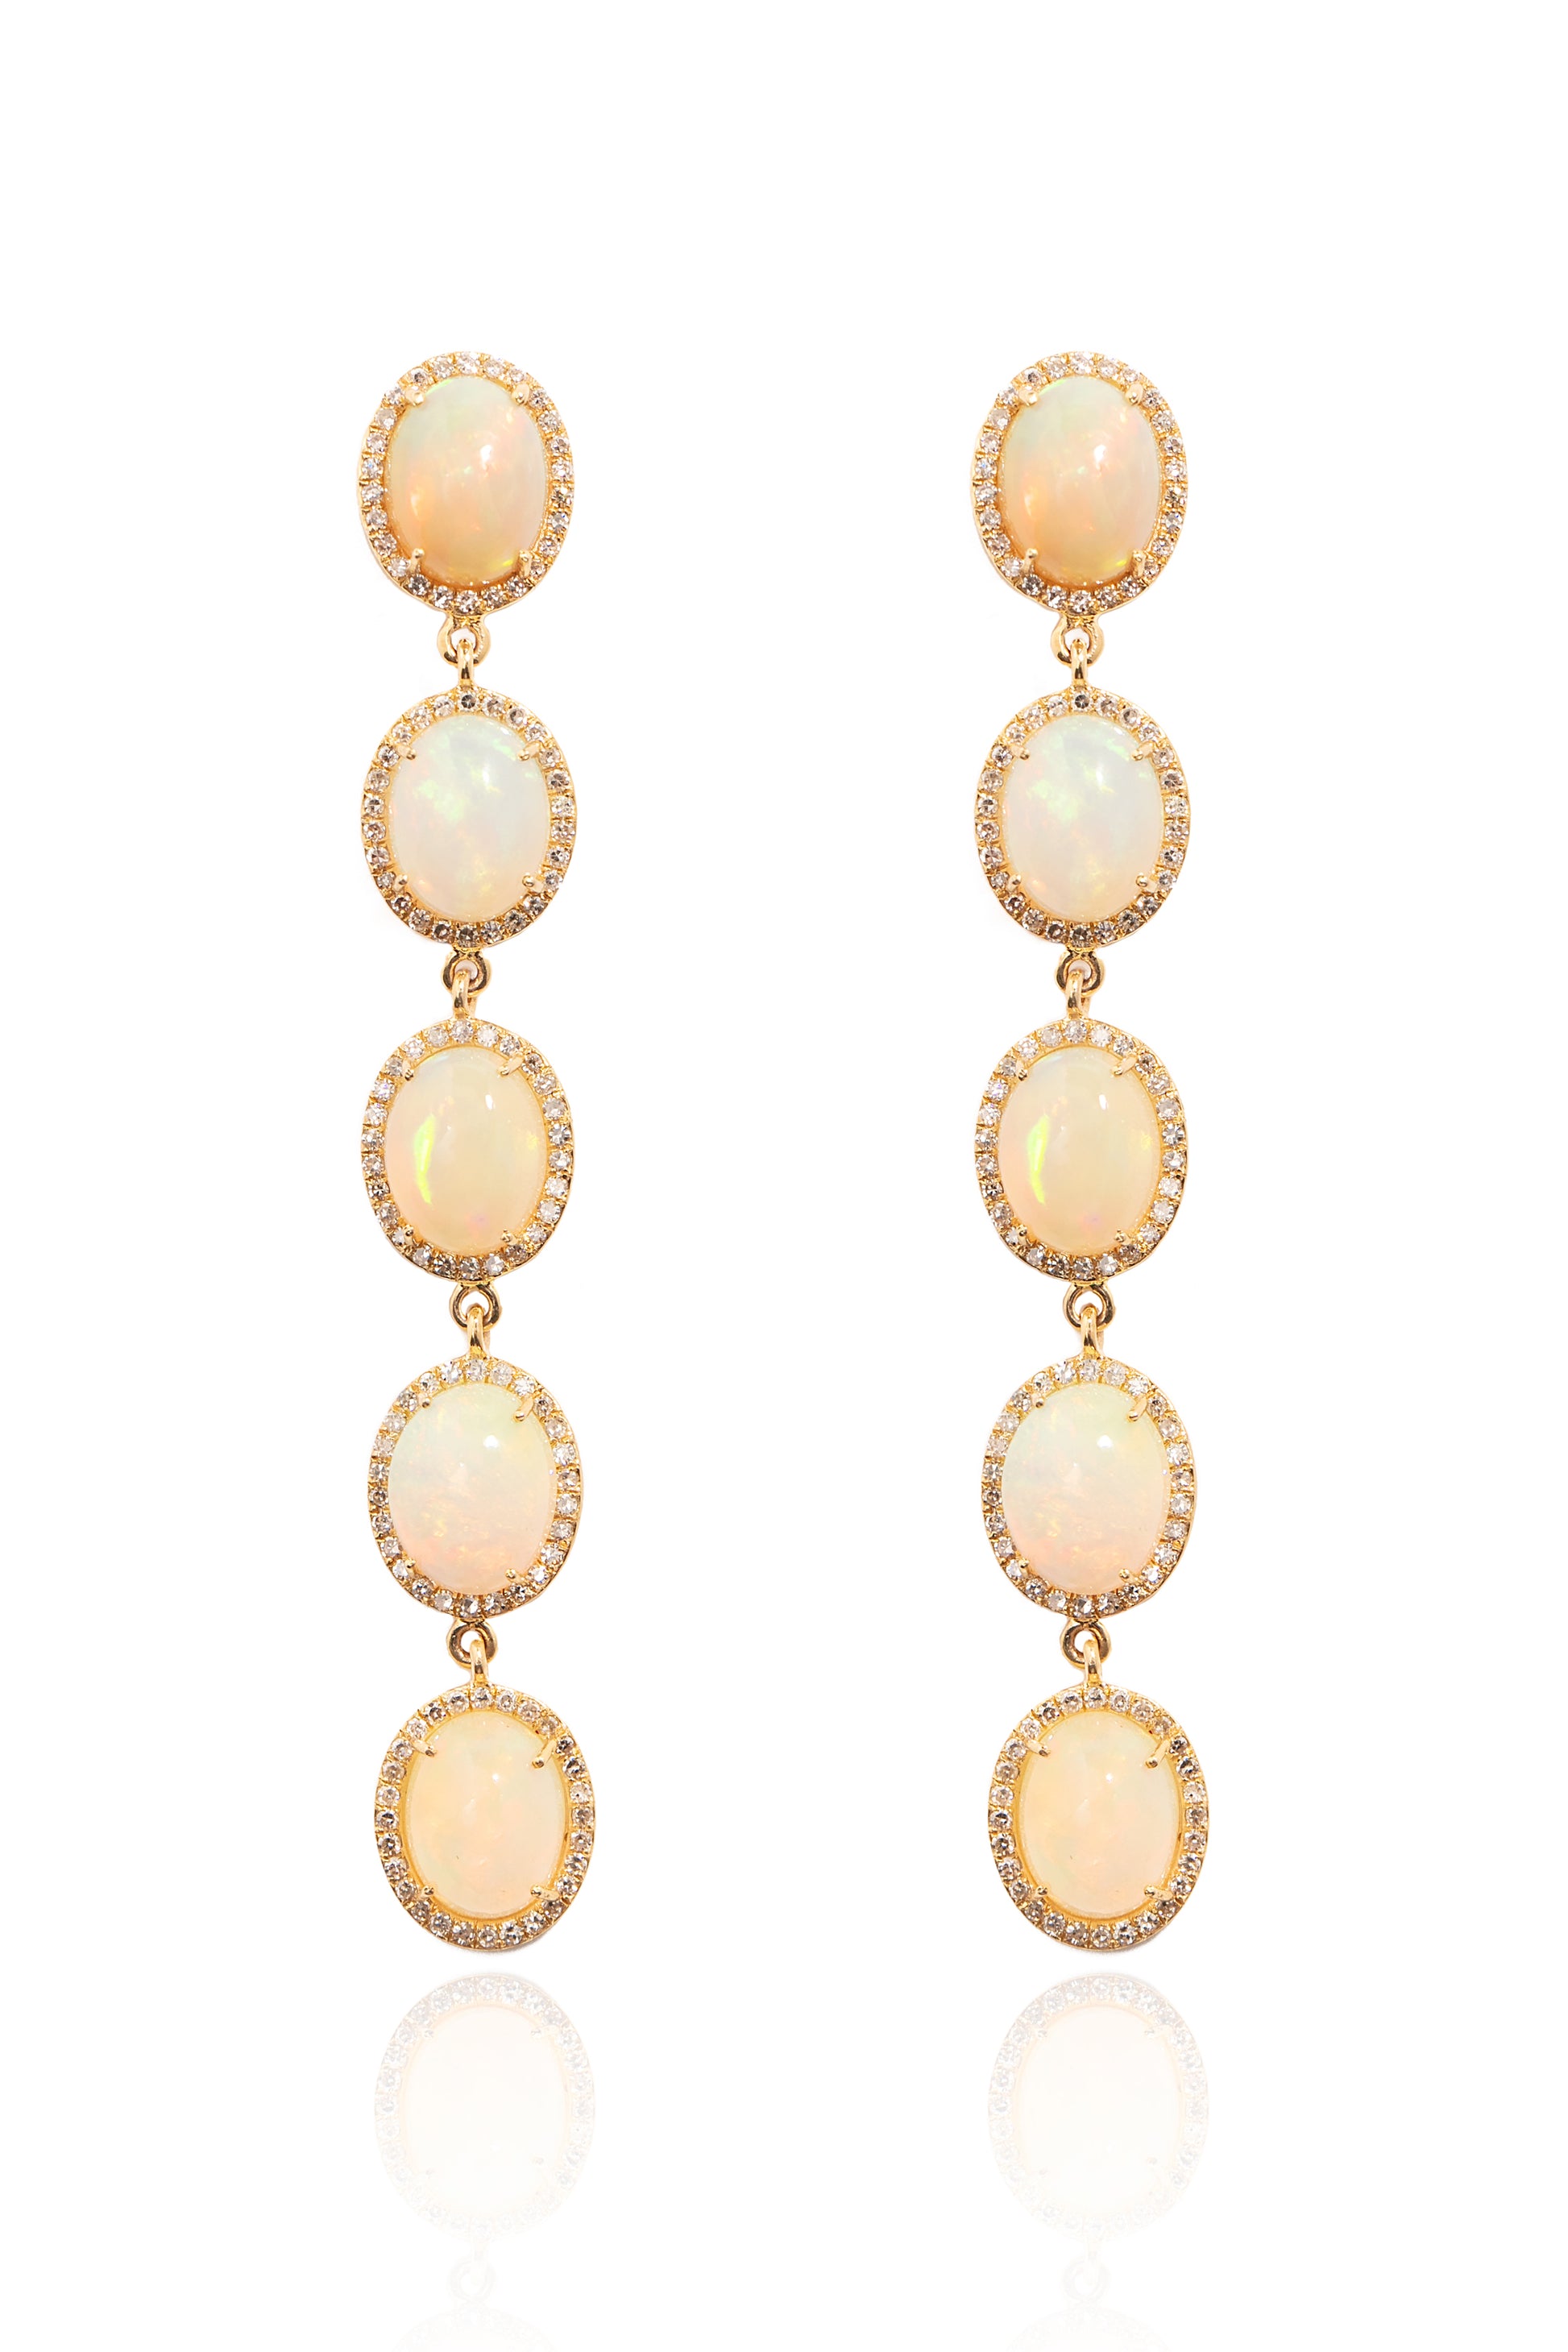 L.A. STEIN 5 Diamond Opal Earrings in 14k Yellow Gold